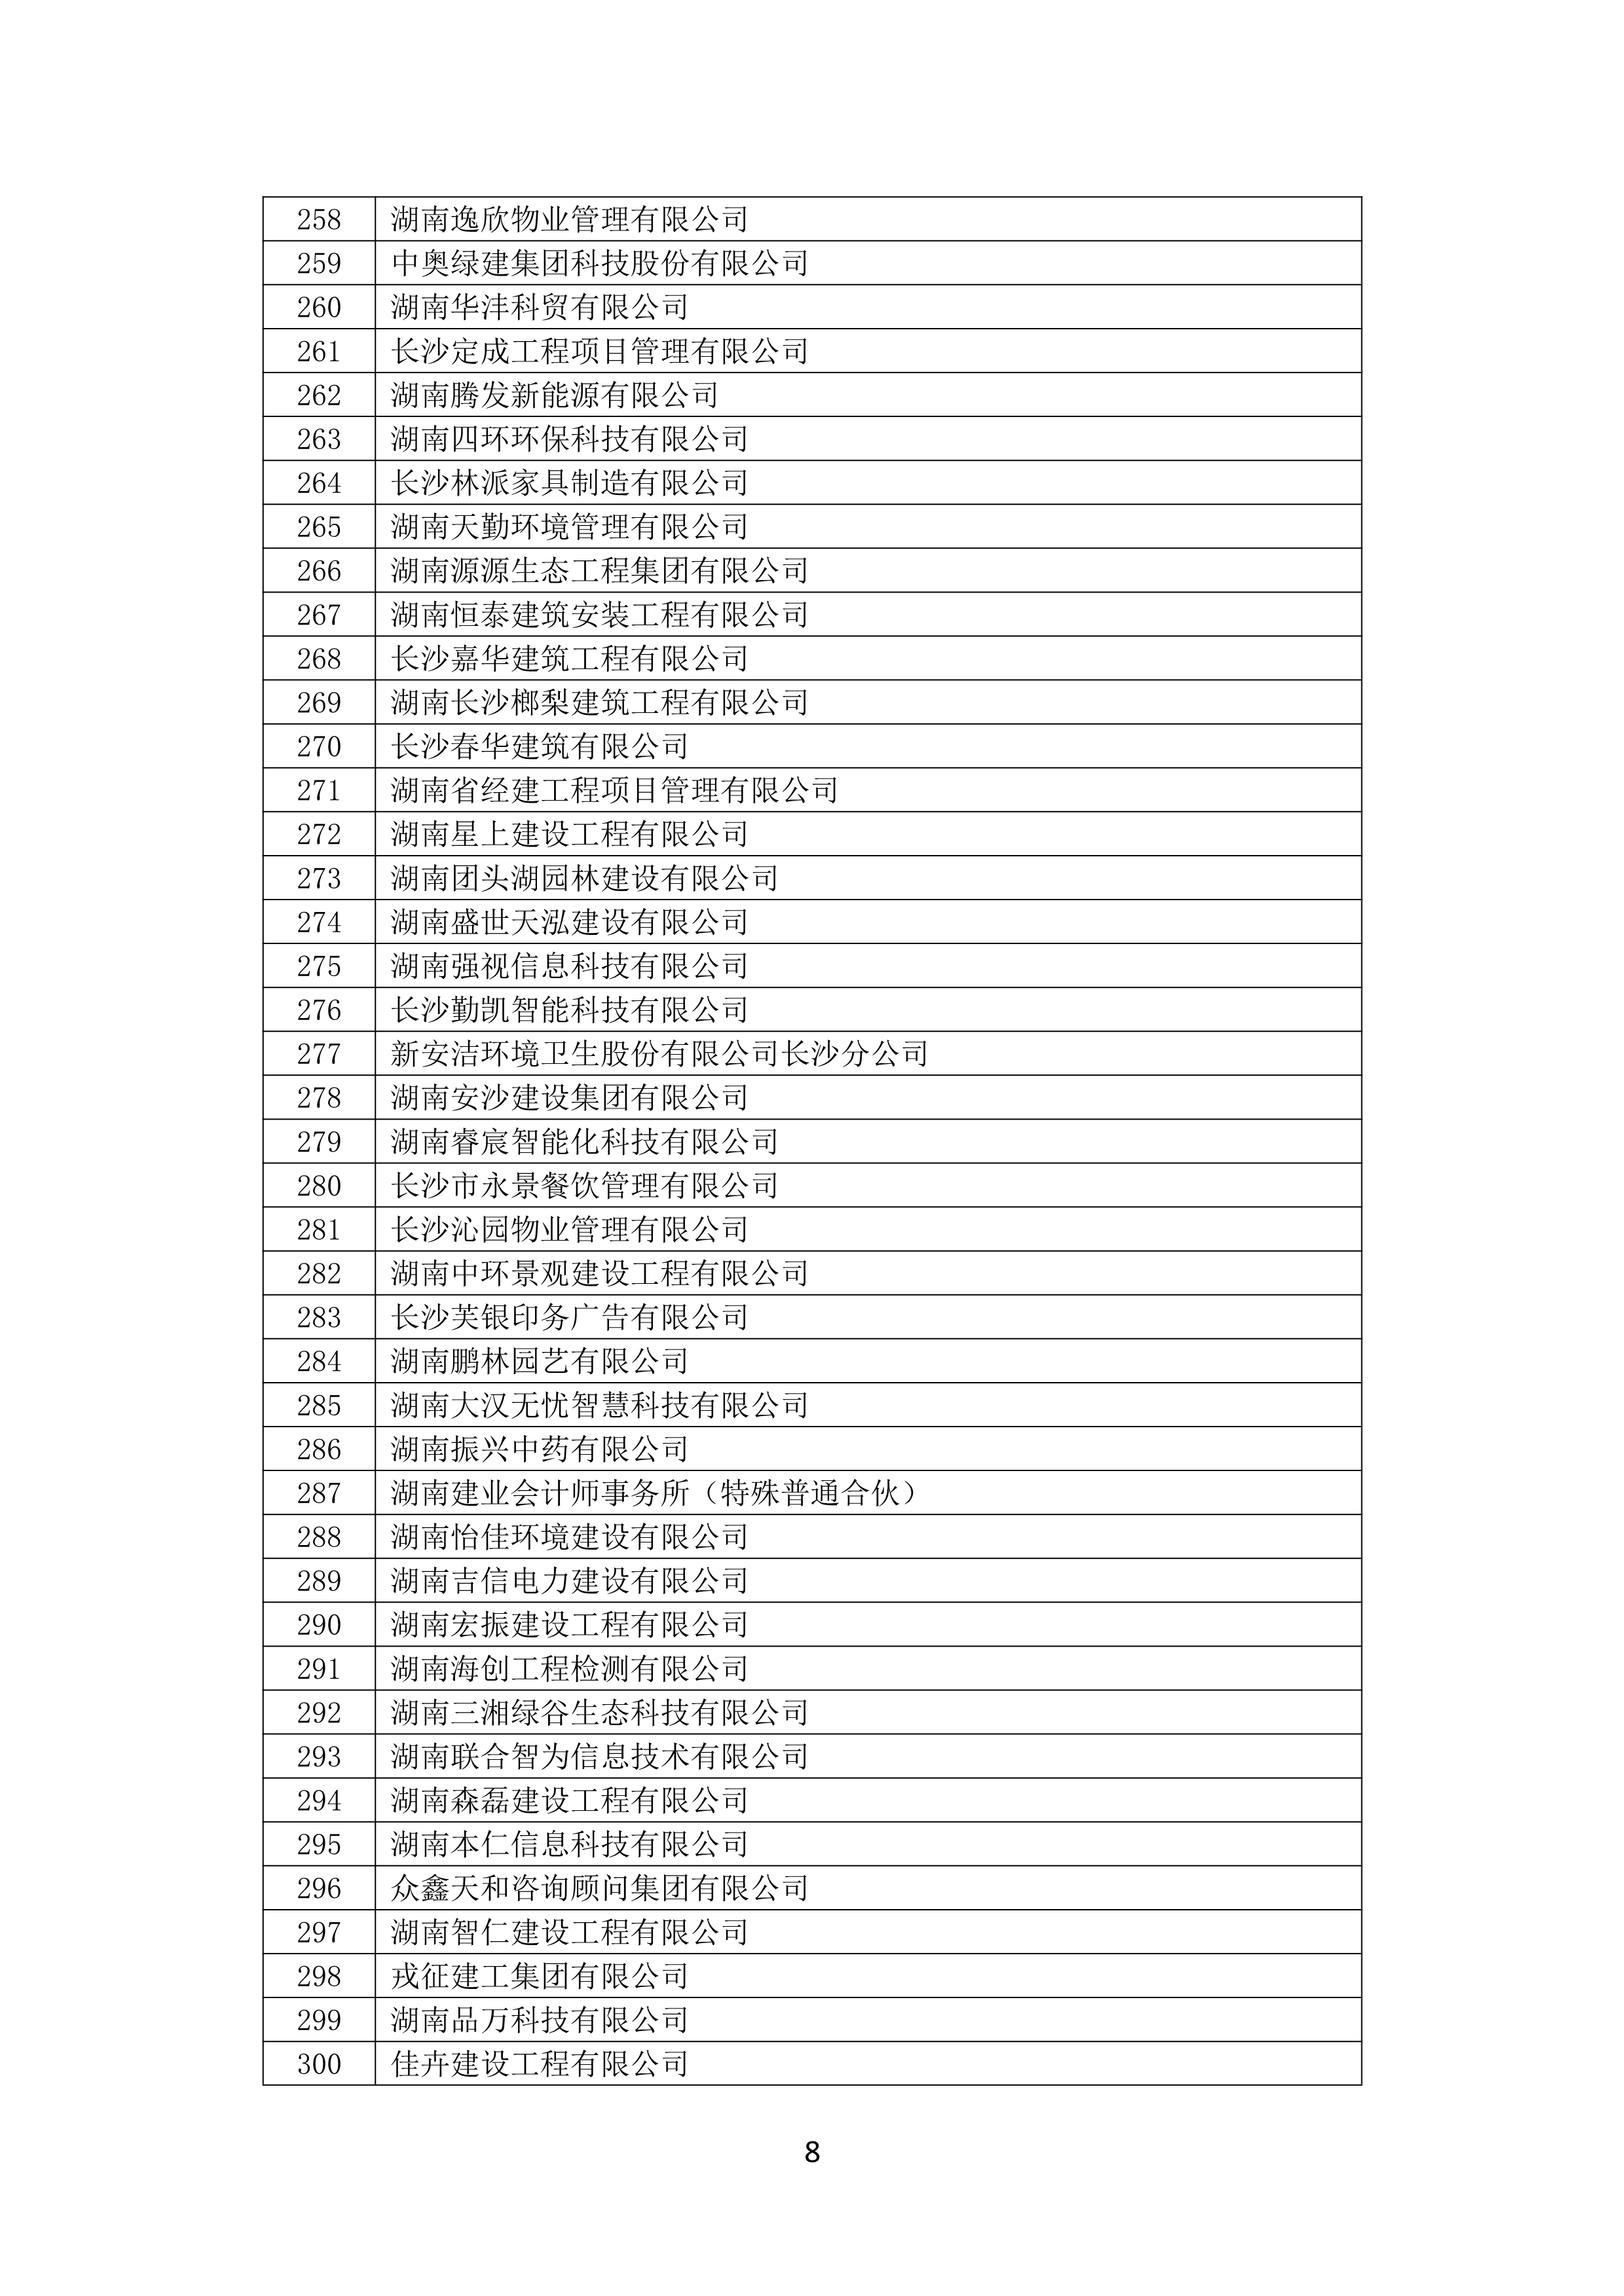 2021 年(nián)度湖南省守合同重信用企業名單_9.png